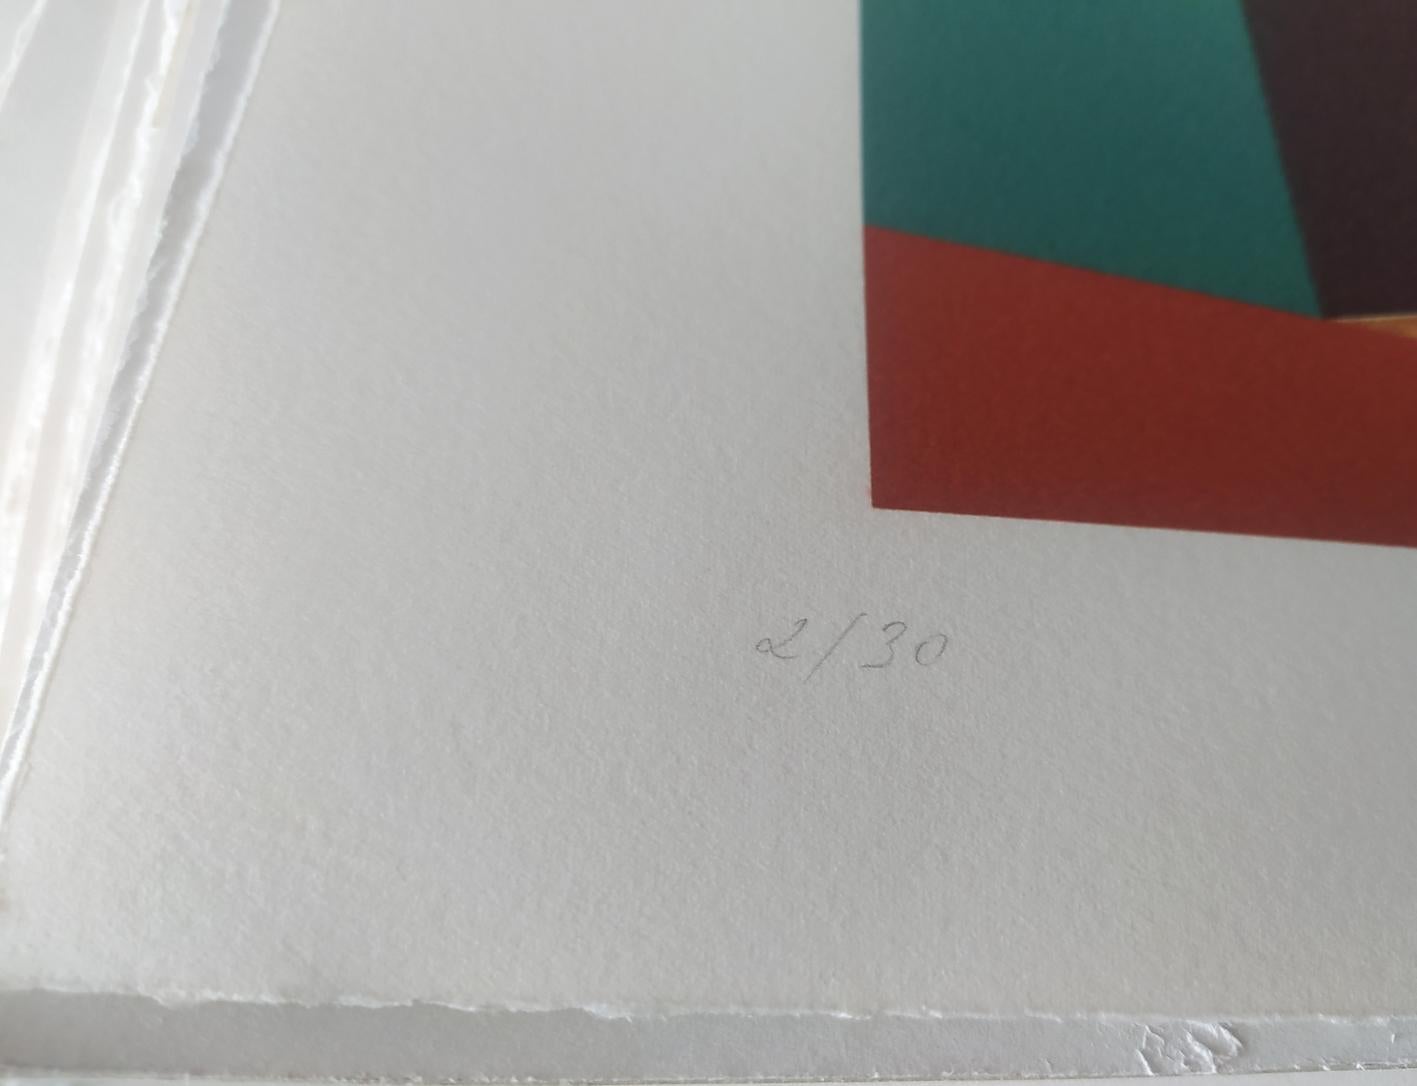 Camping, 2009

Impression numérique pigmentaire à l'encre Ultrachrome sur papier Fabriano Rosaspina. Signé à la main par l'artiste, et certificat d'authenticité. Edition de 30  (Non encadré)

Ses œuvres ont été exposées au musée Reina Sofía de